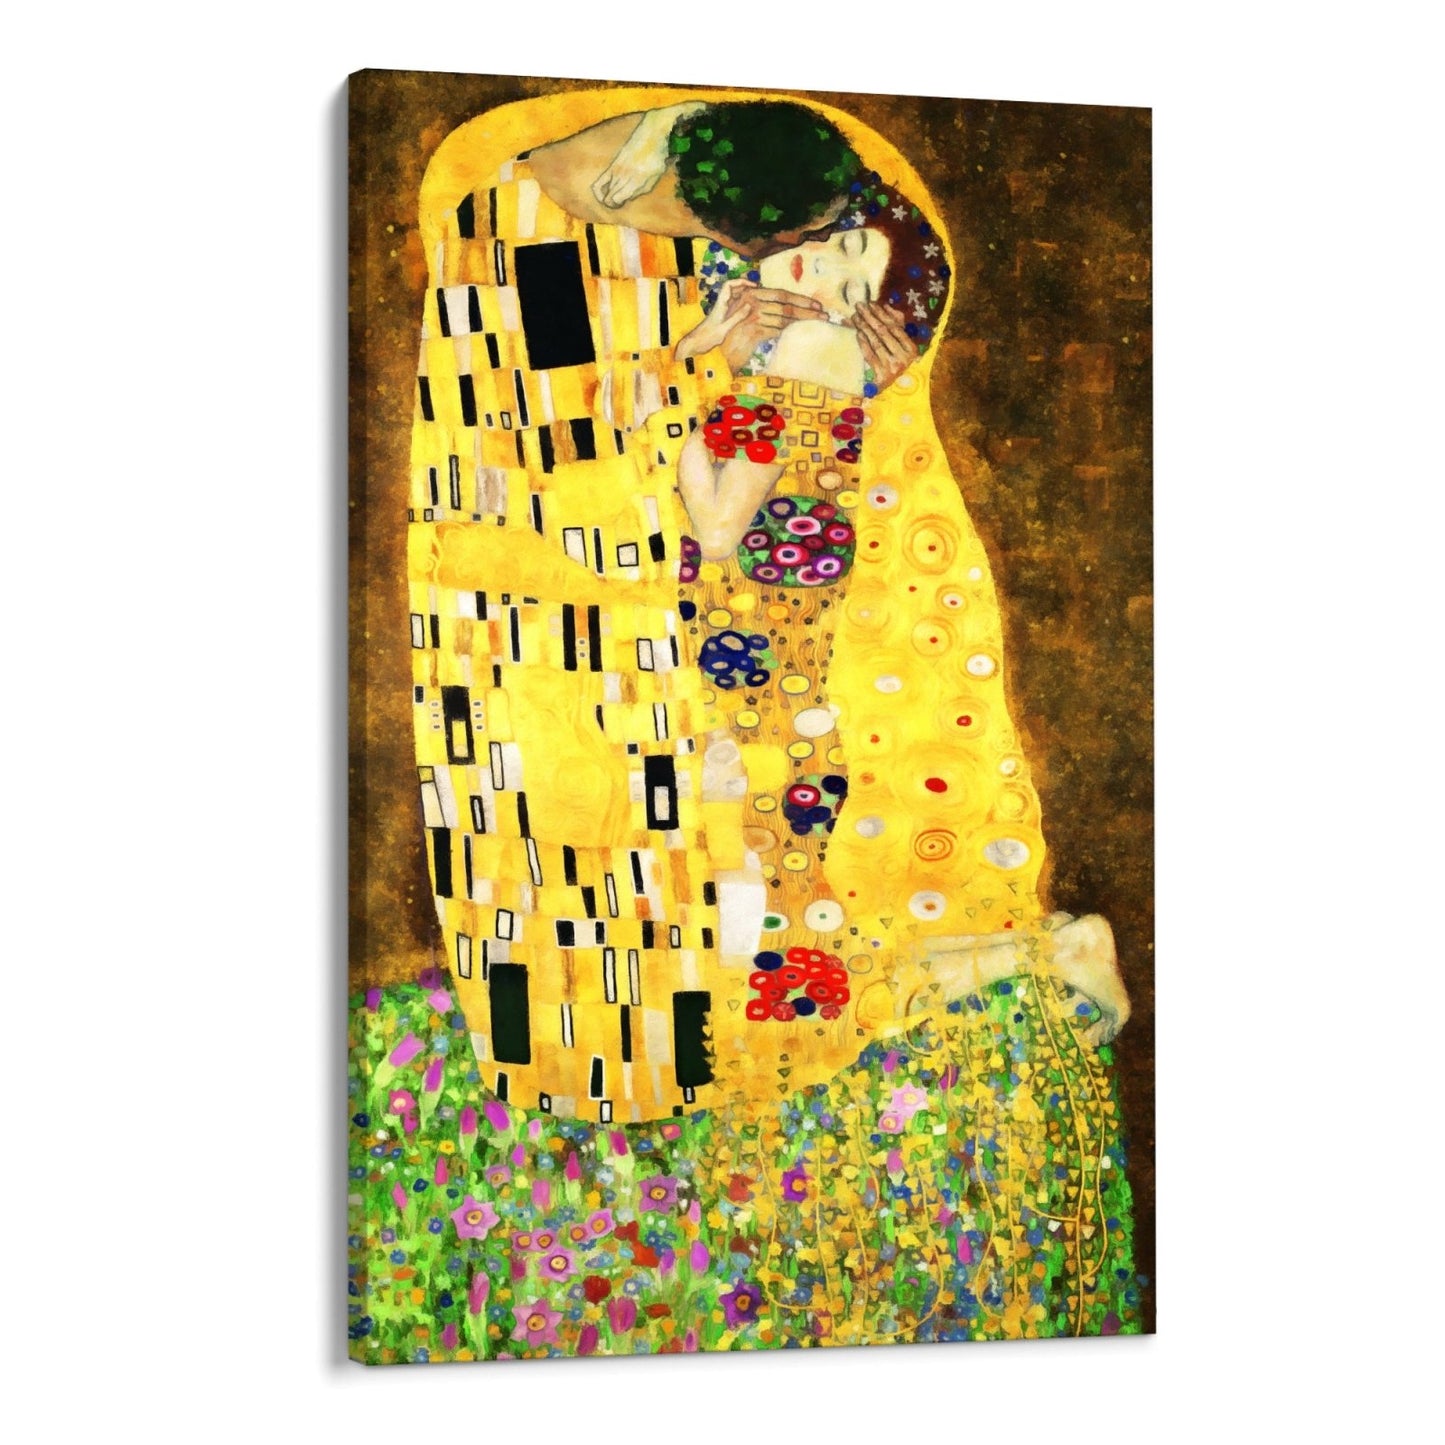 Sărutul lui Klimt